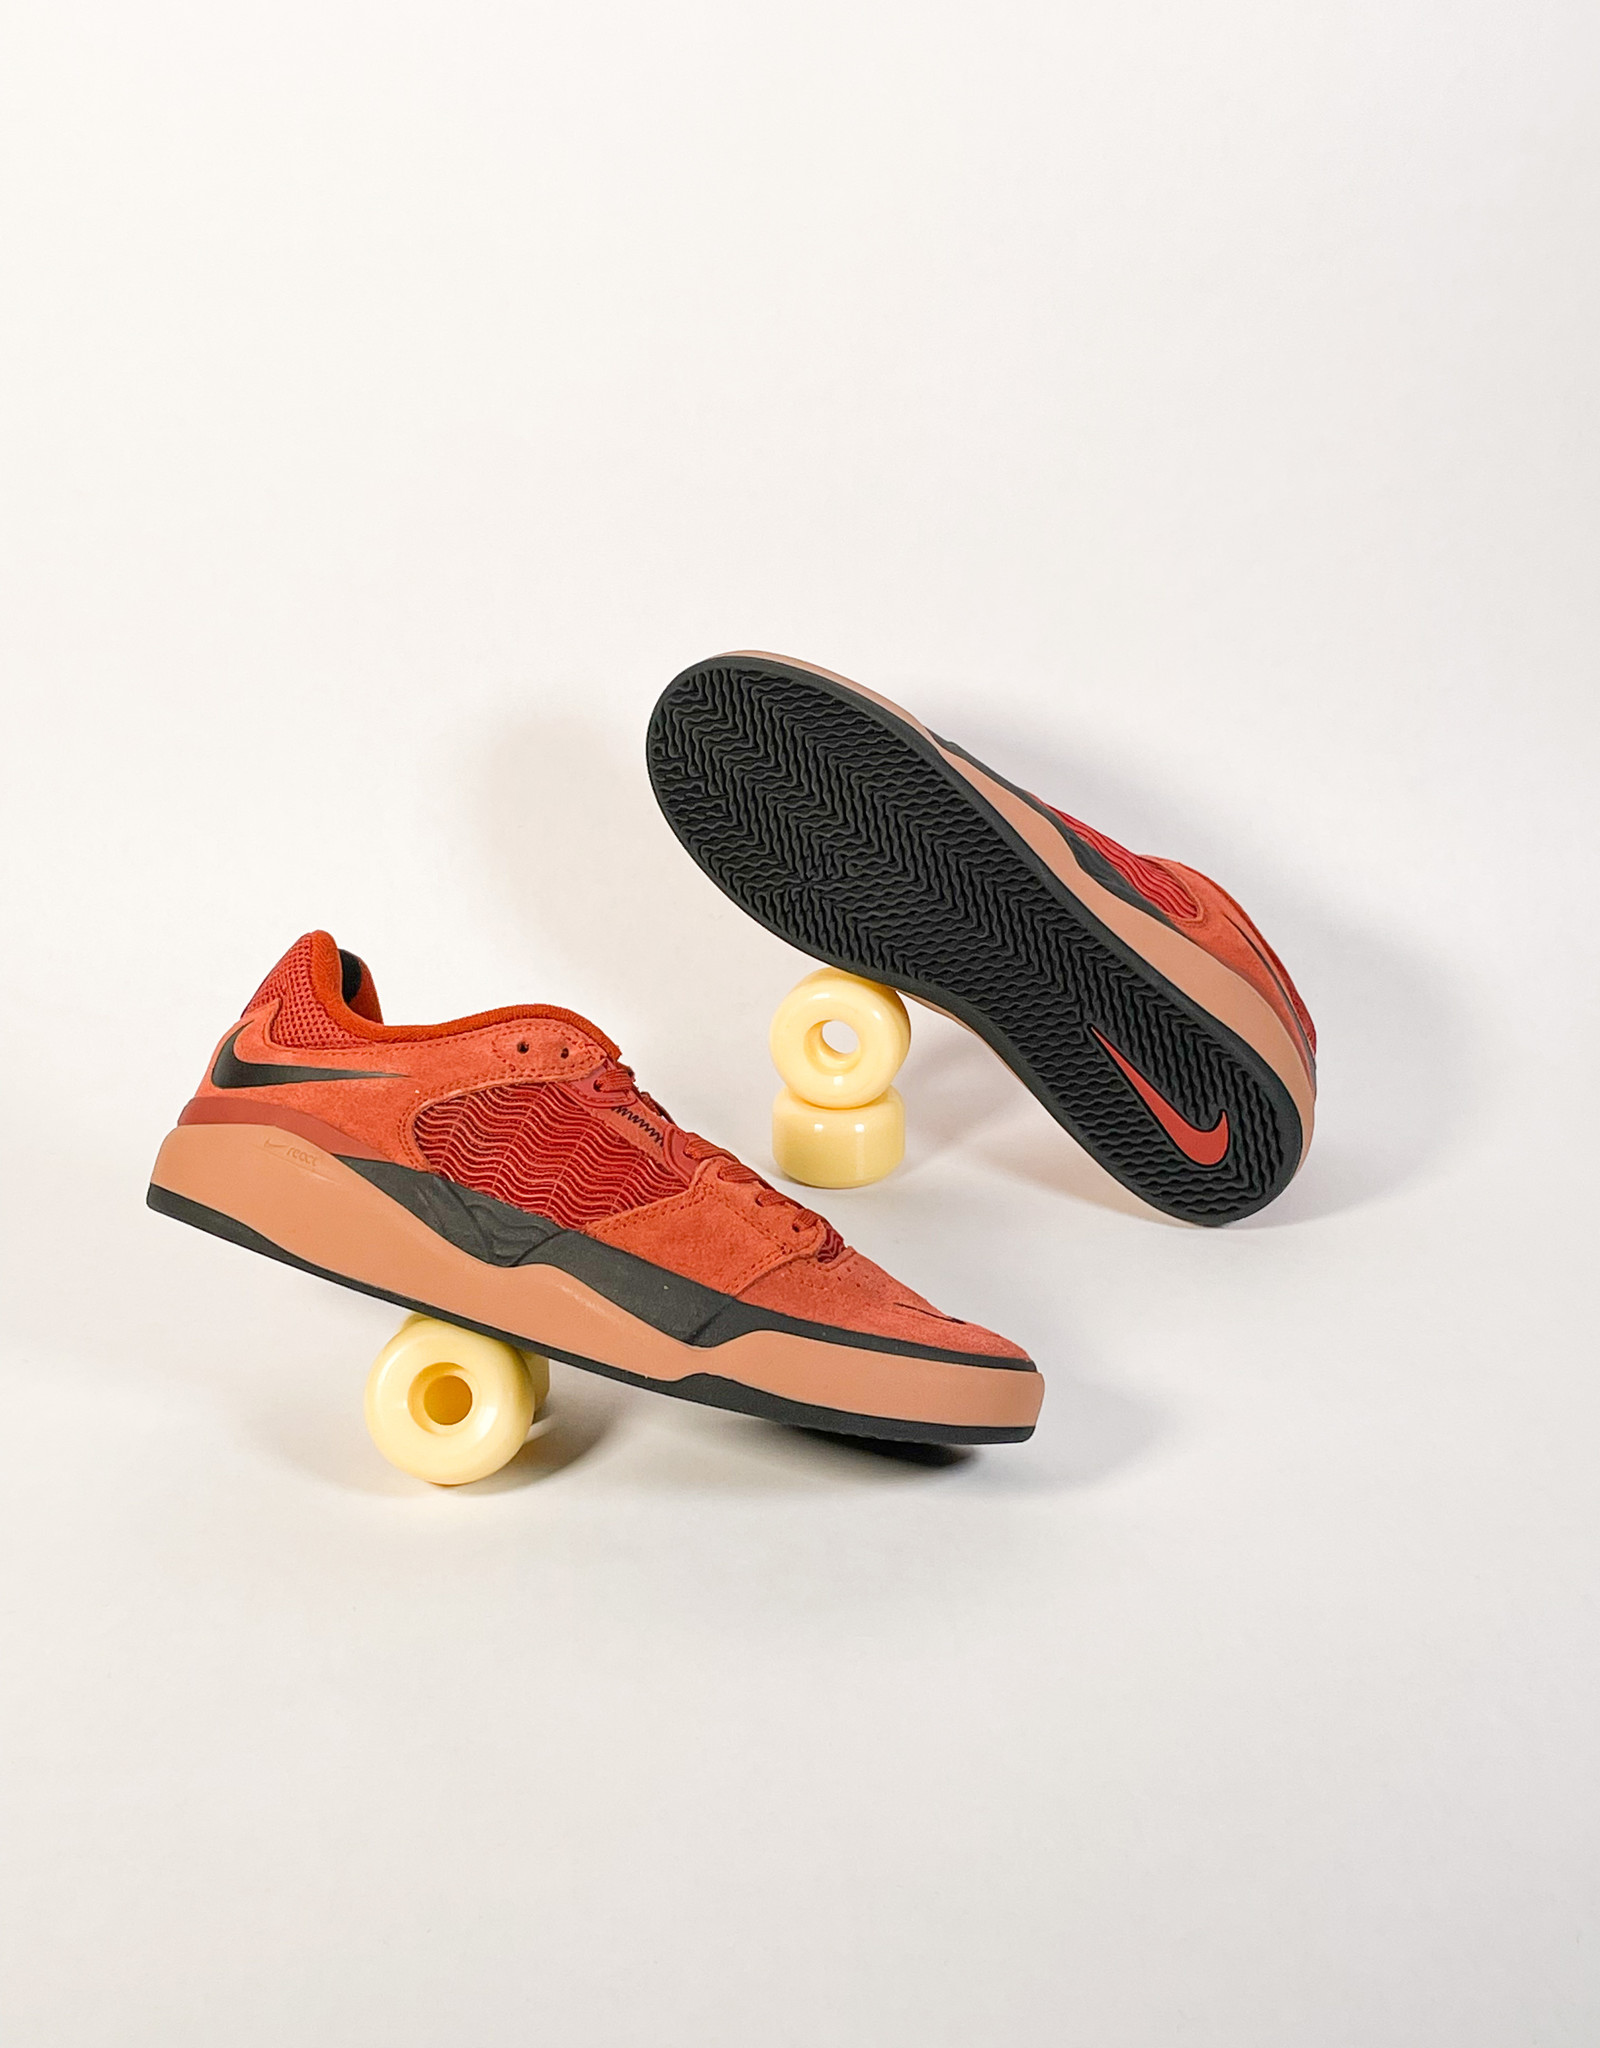 Nike SB Ishod Rugged Orange & Black Skate Shoes